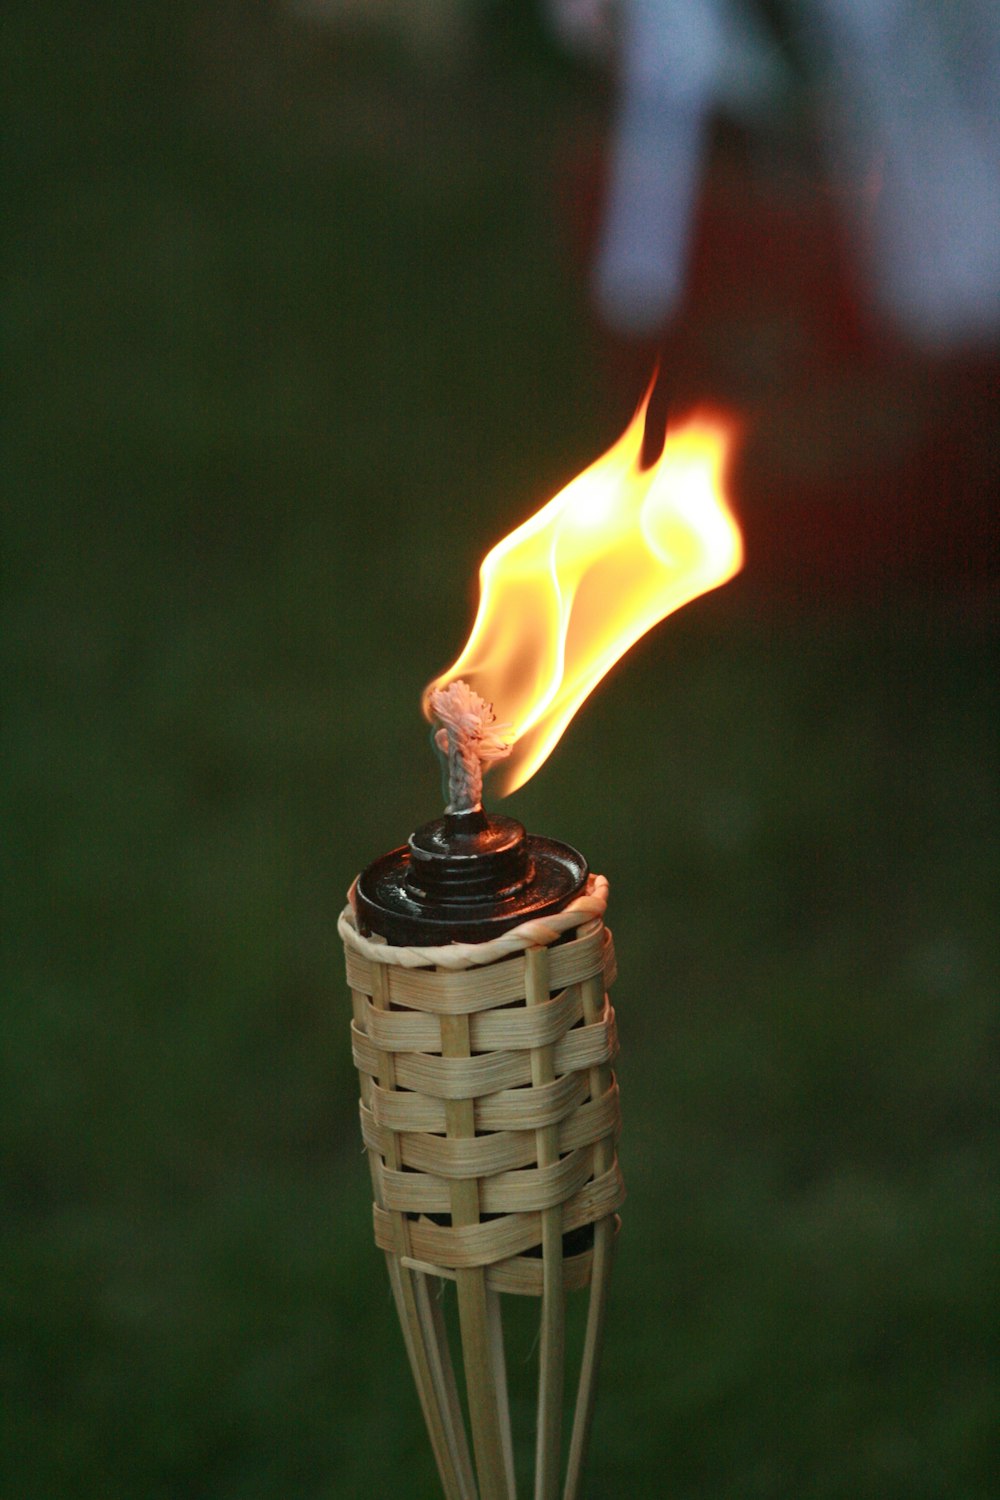 fire in brown wicker basket